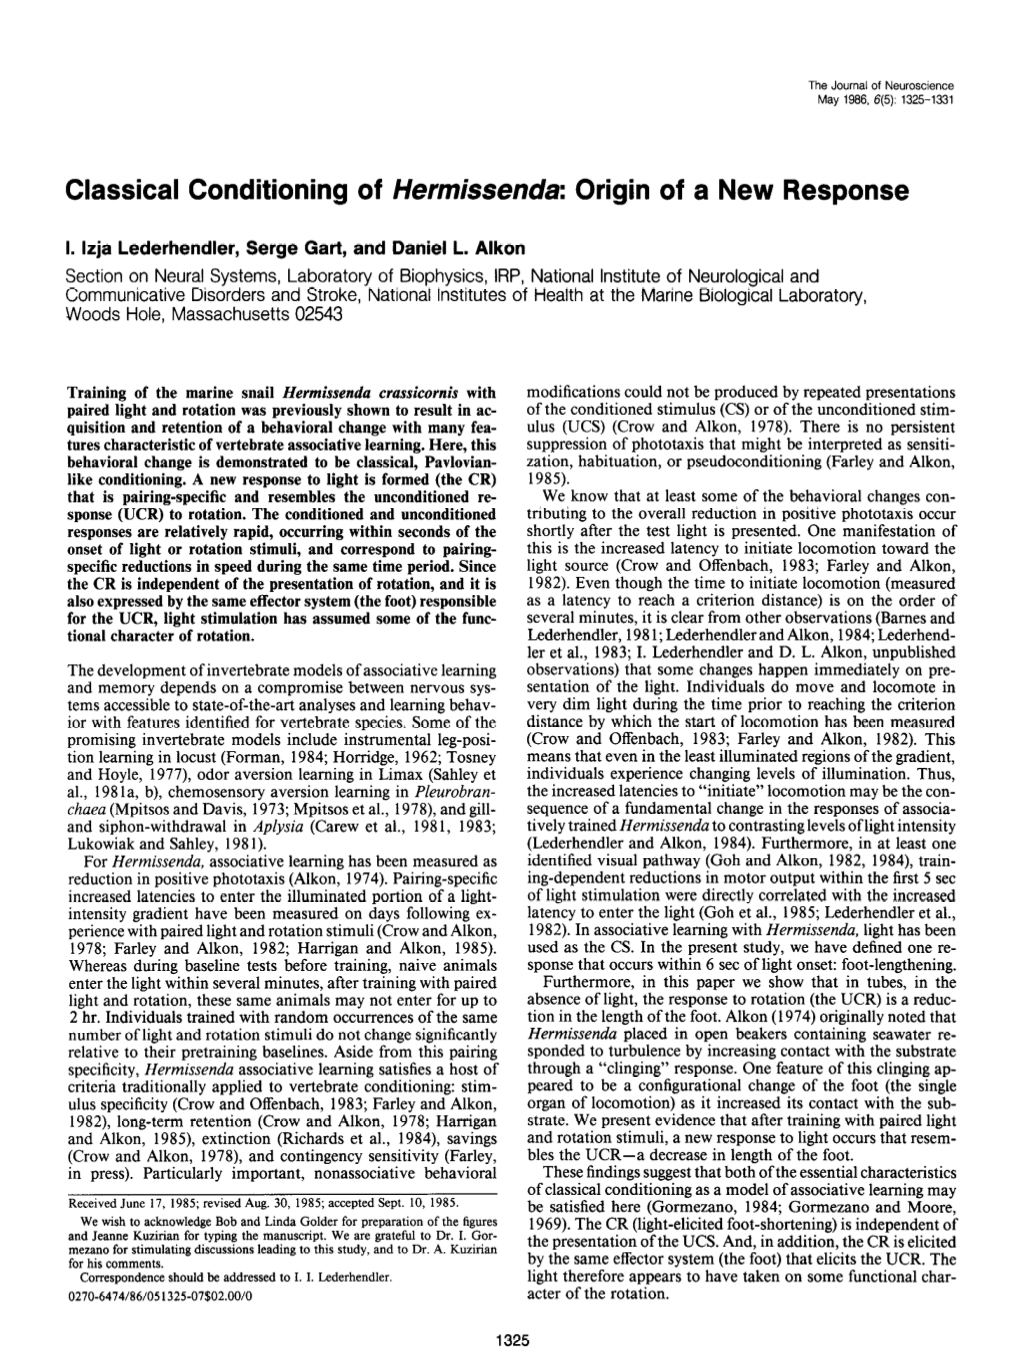 Classical Conditioning of Hermissenda: Origin of a New Response